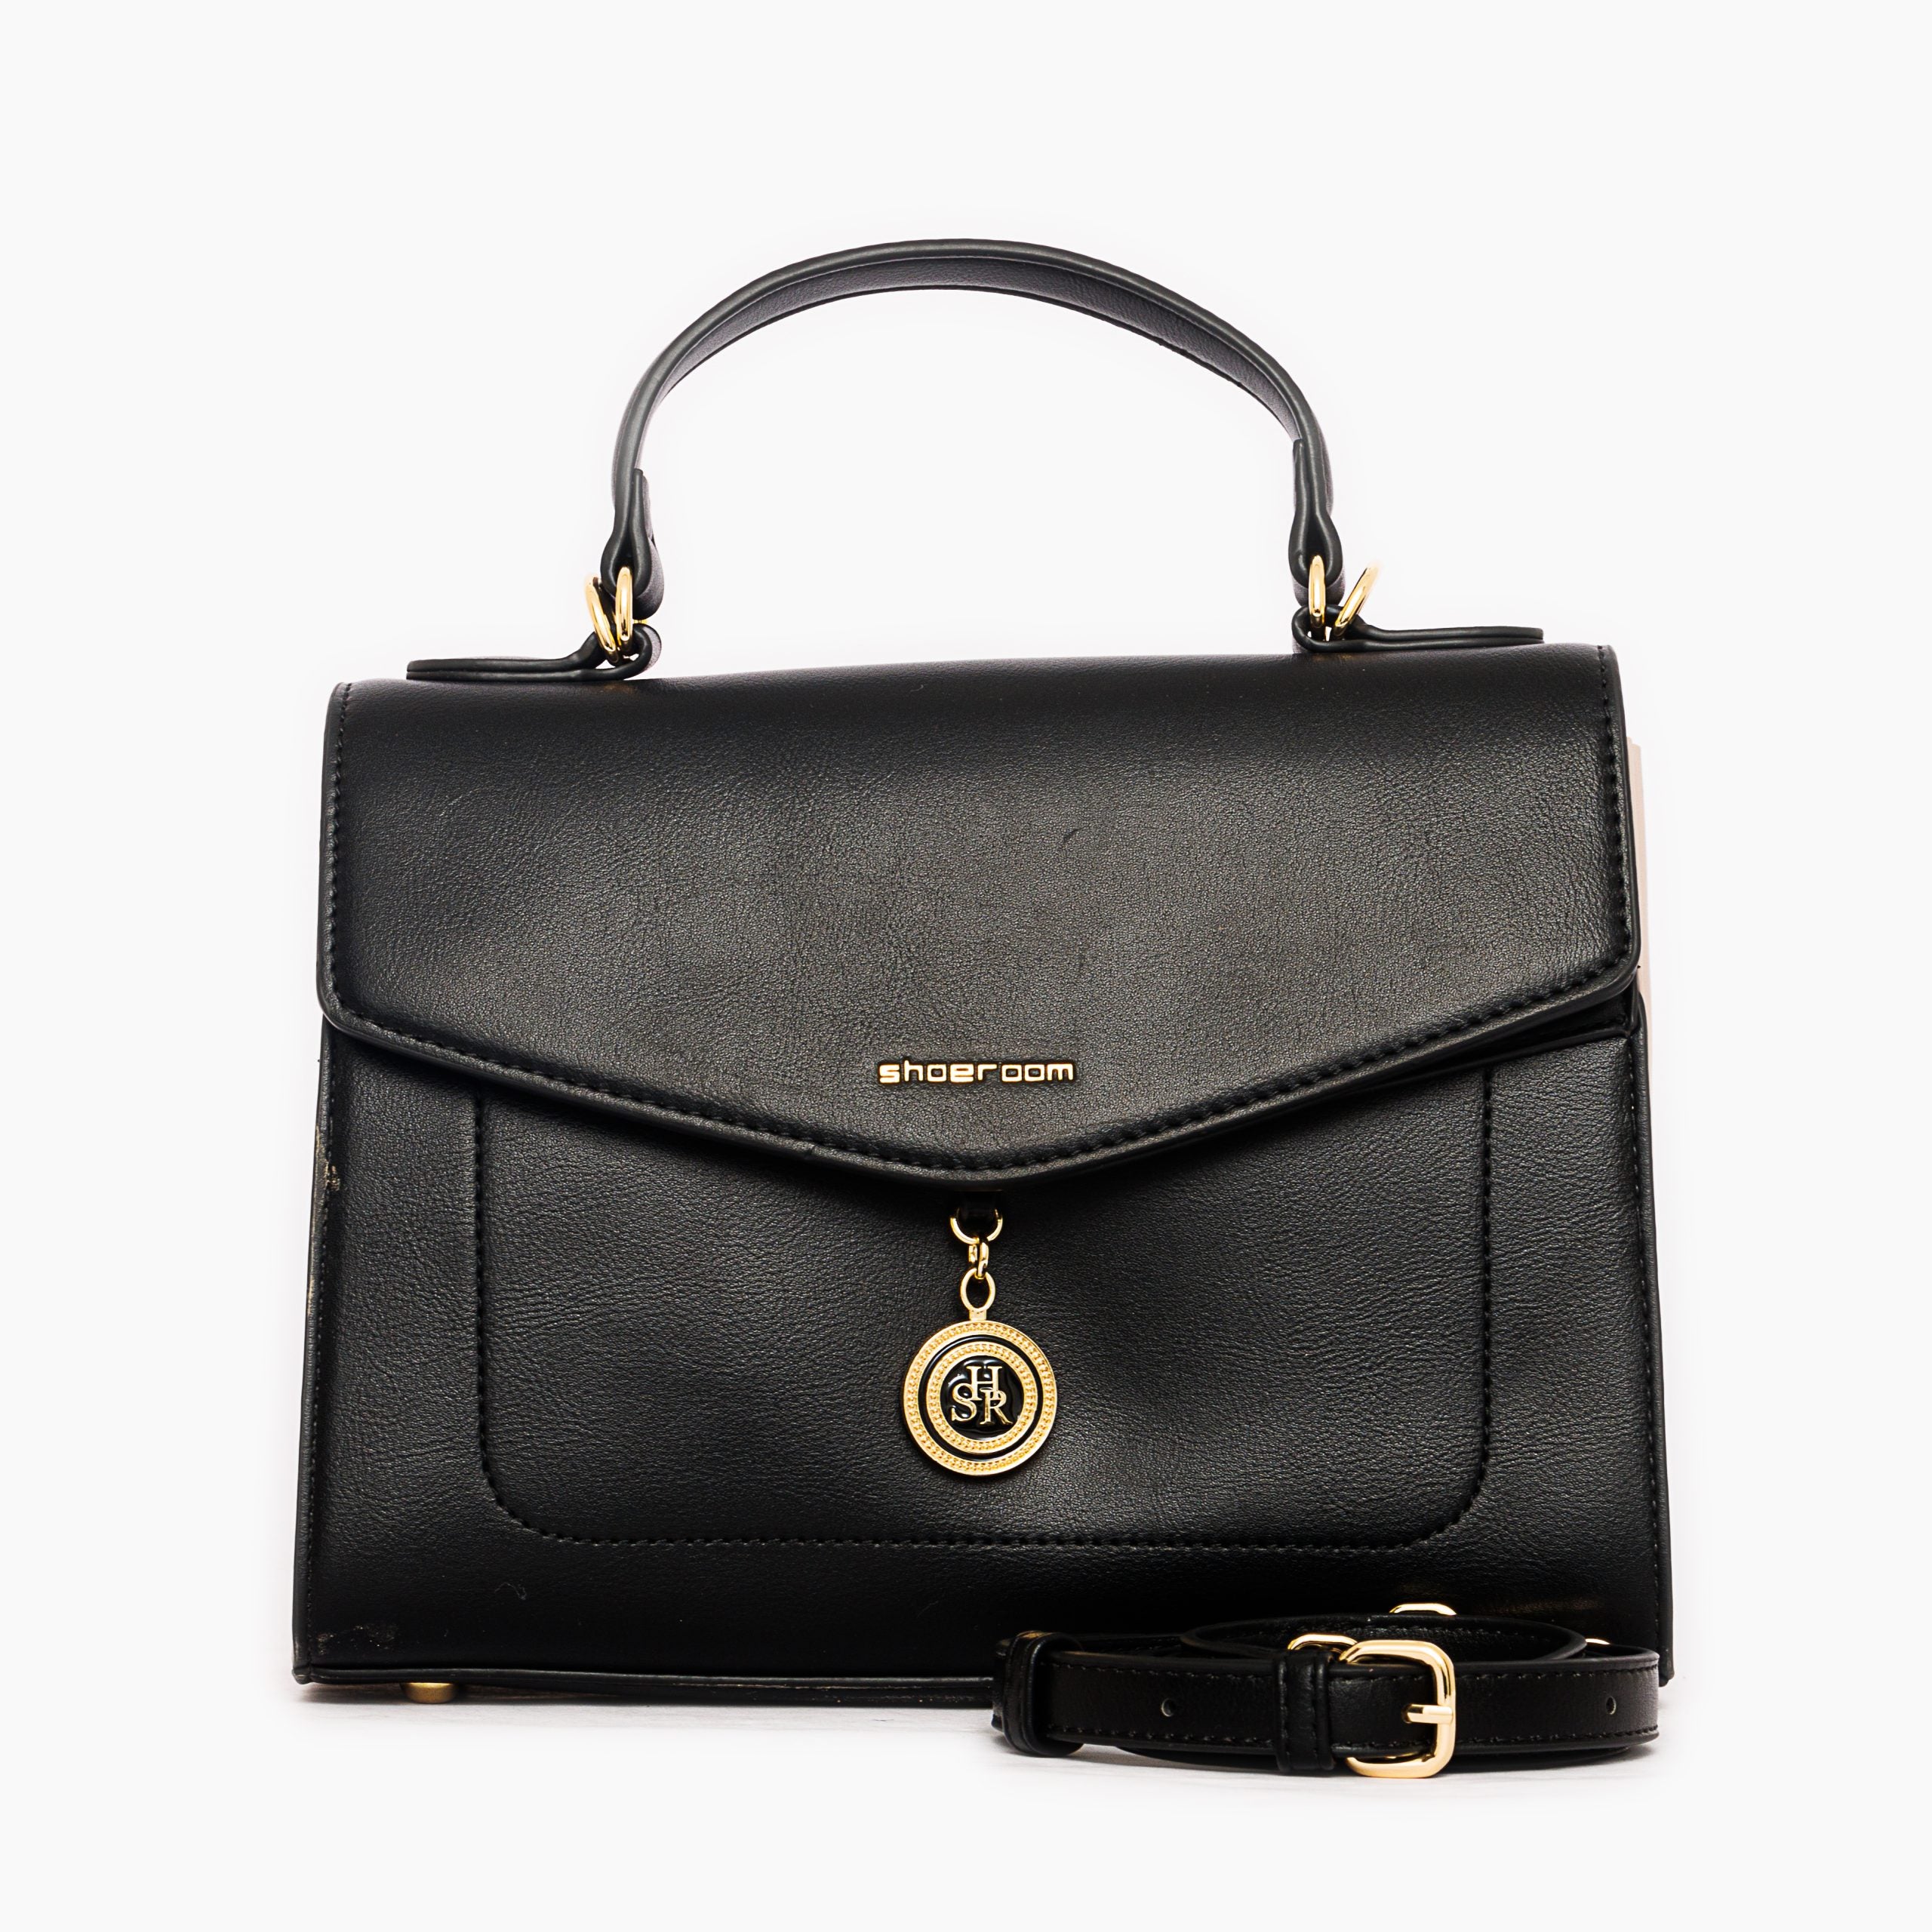 Shoeroom Woman Handbags B1434